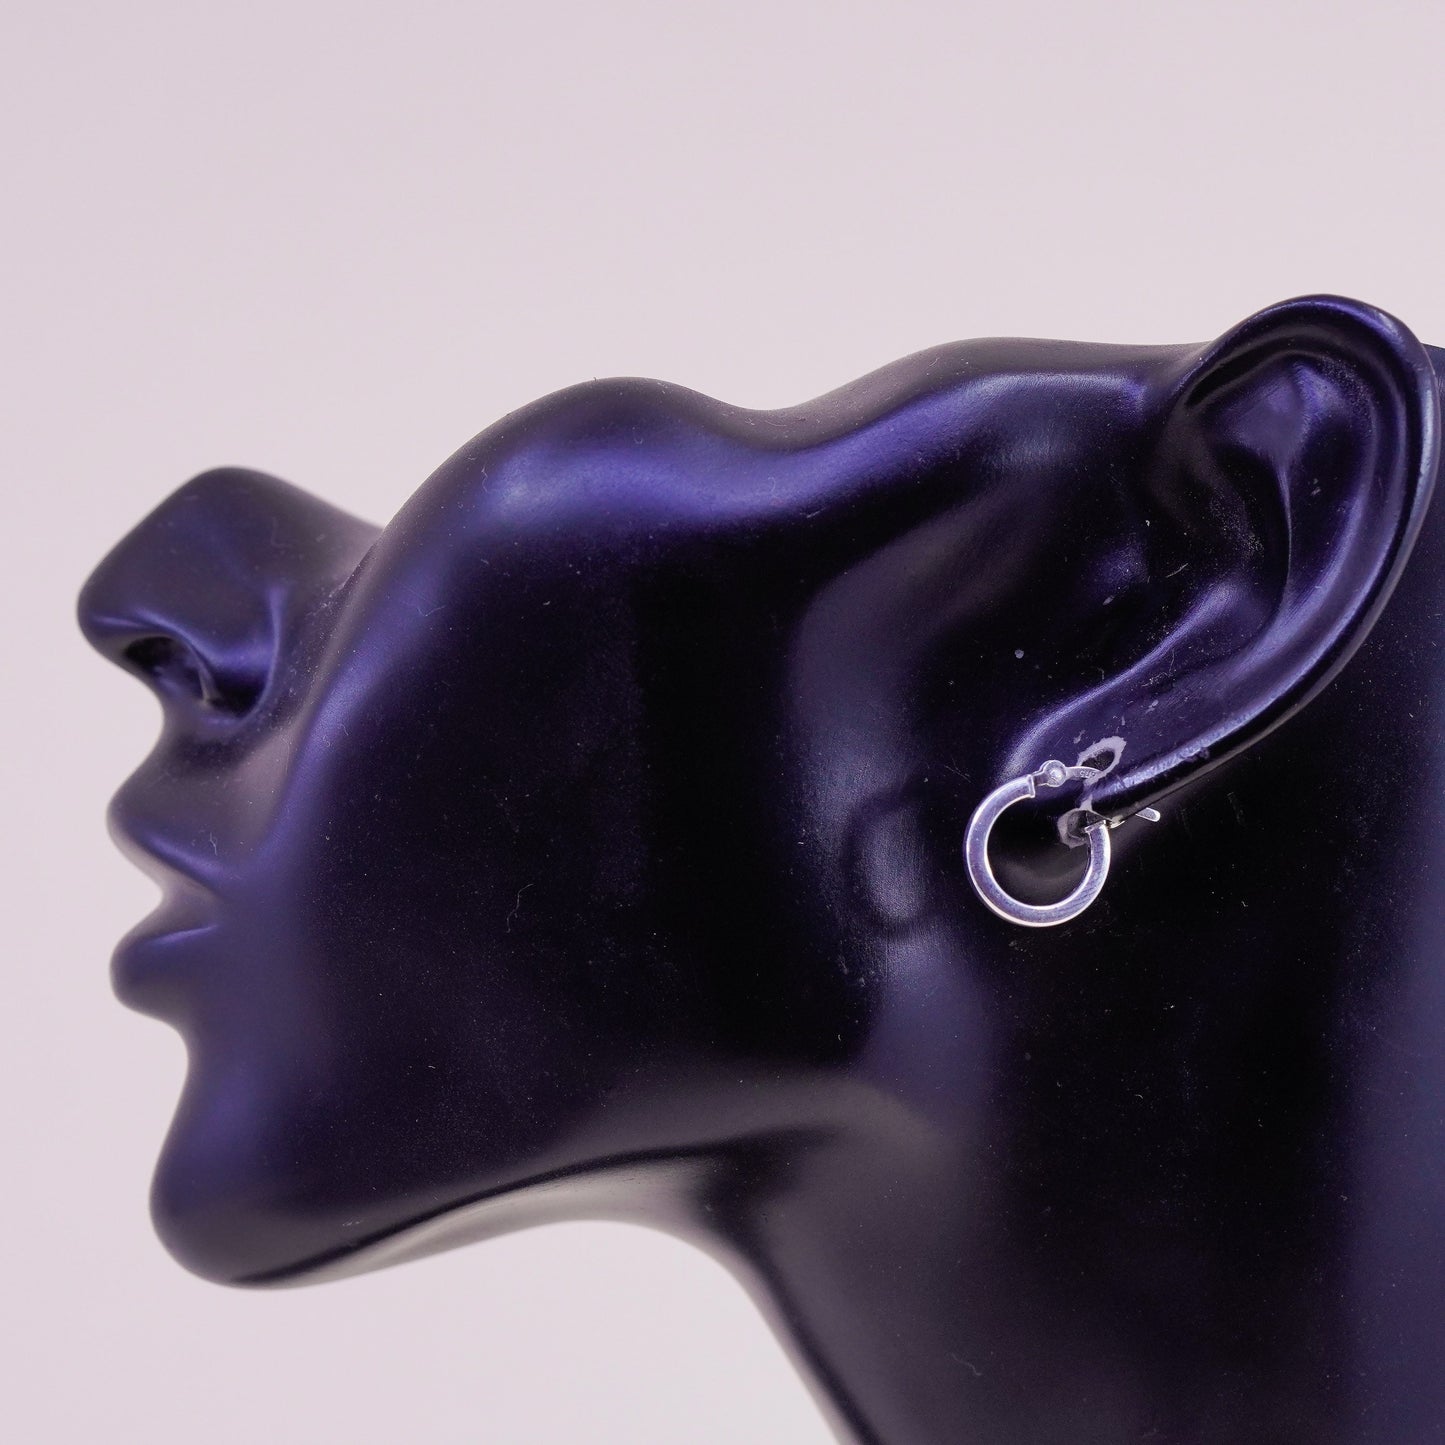 0.5”, Vintage sterling silver loop earrings, fashion minimalist, 925 hoops